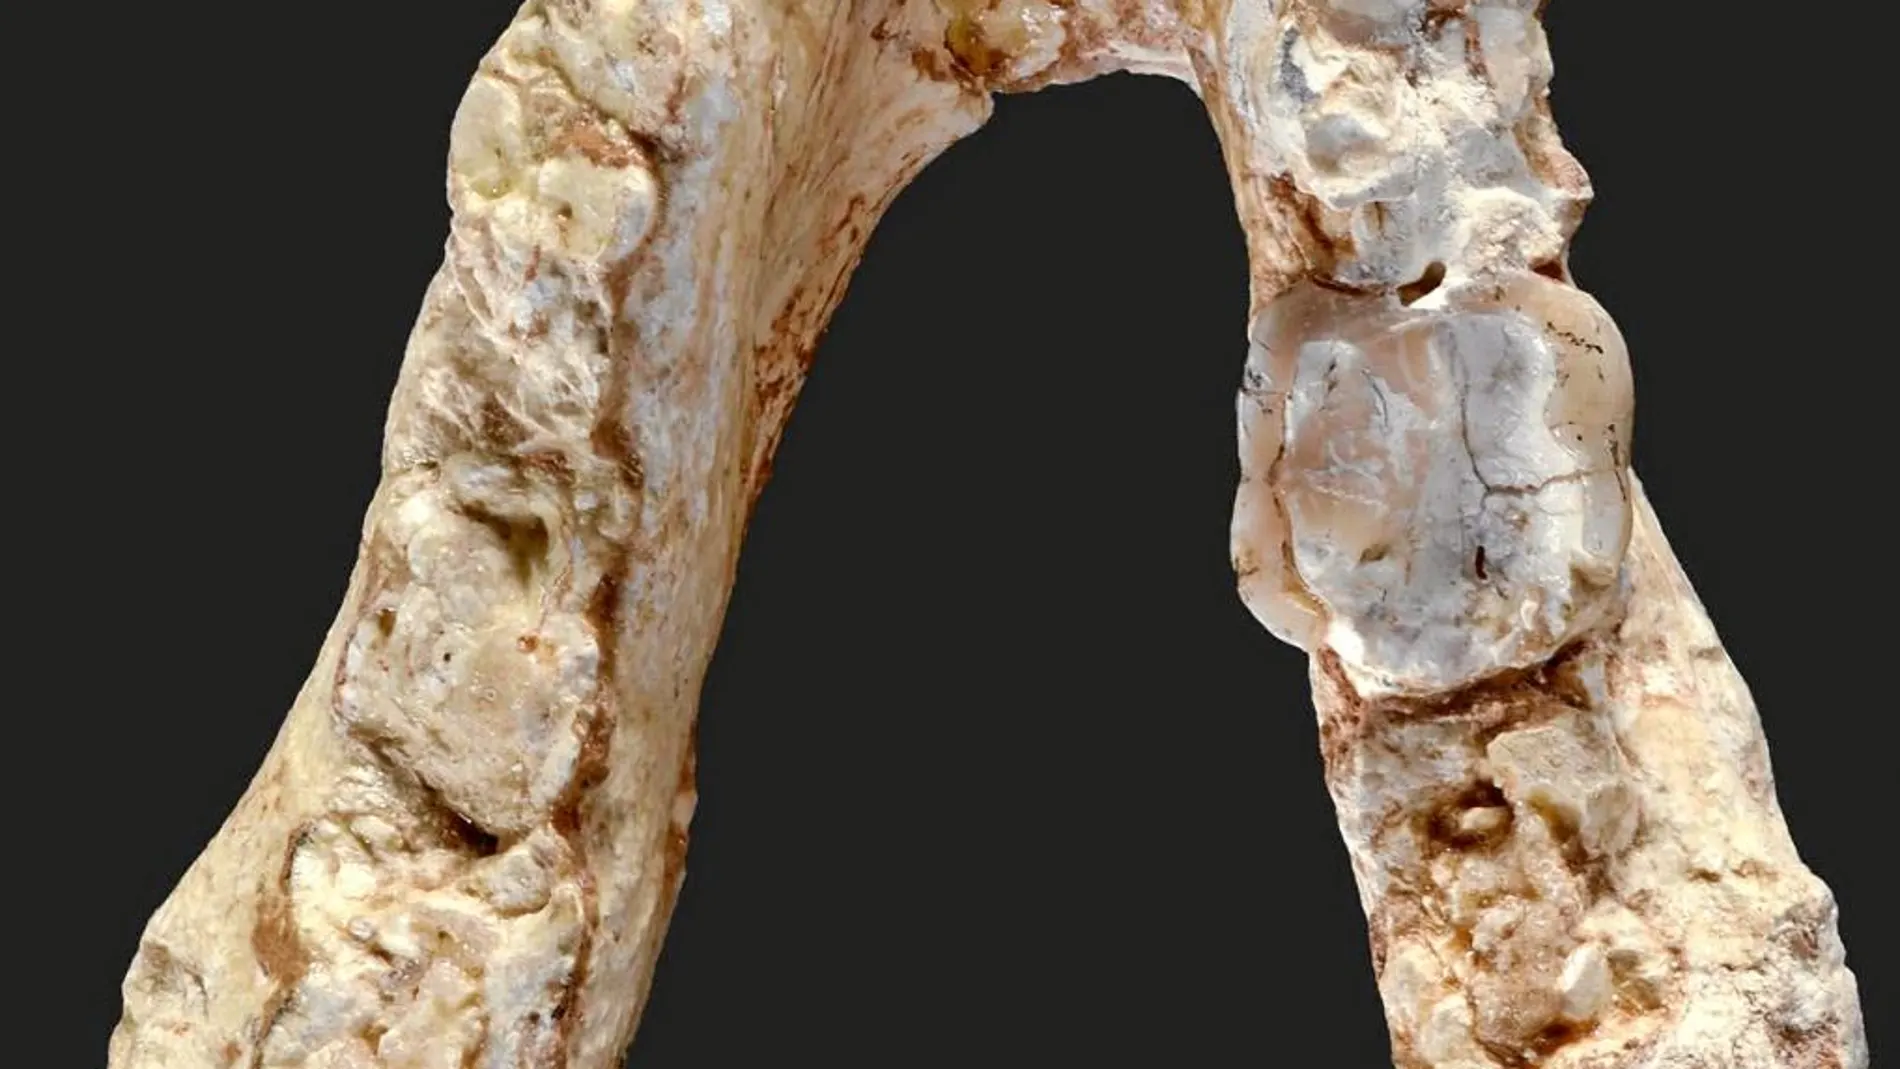 Fragmento de mandíbula del Graecopithecus freybergi encontrado en Europa